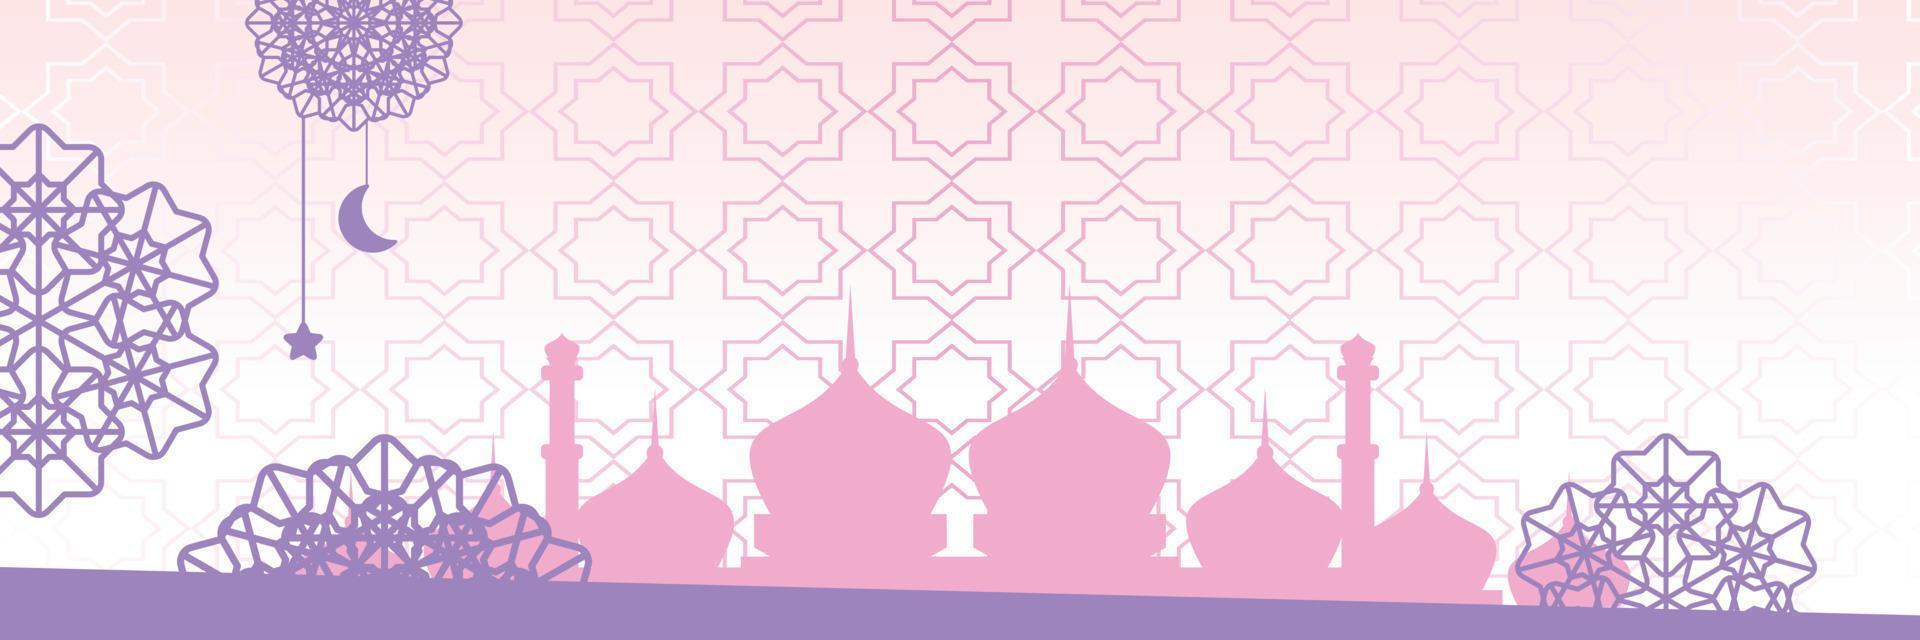 islâmico fundo, com lindo mandala ornamento. vetor modelo para bandeiras, cumprimento cartões para islâmico feriados, eid al fitr, ramadã, eid al adha